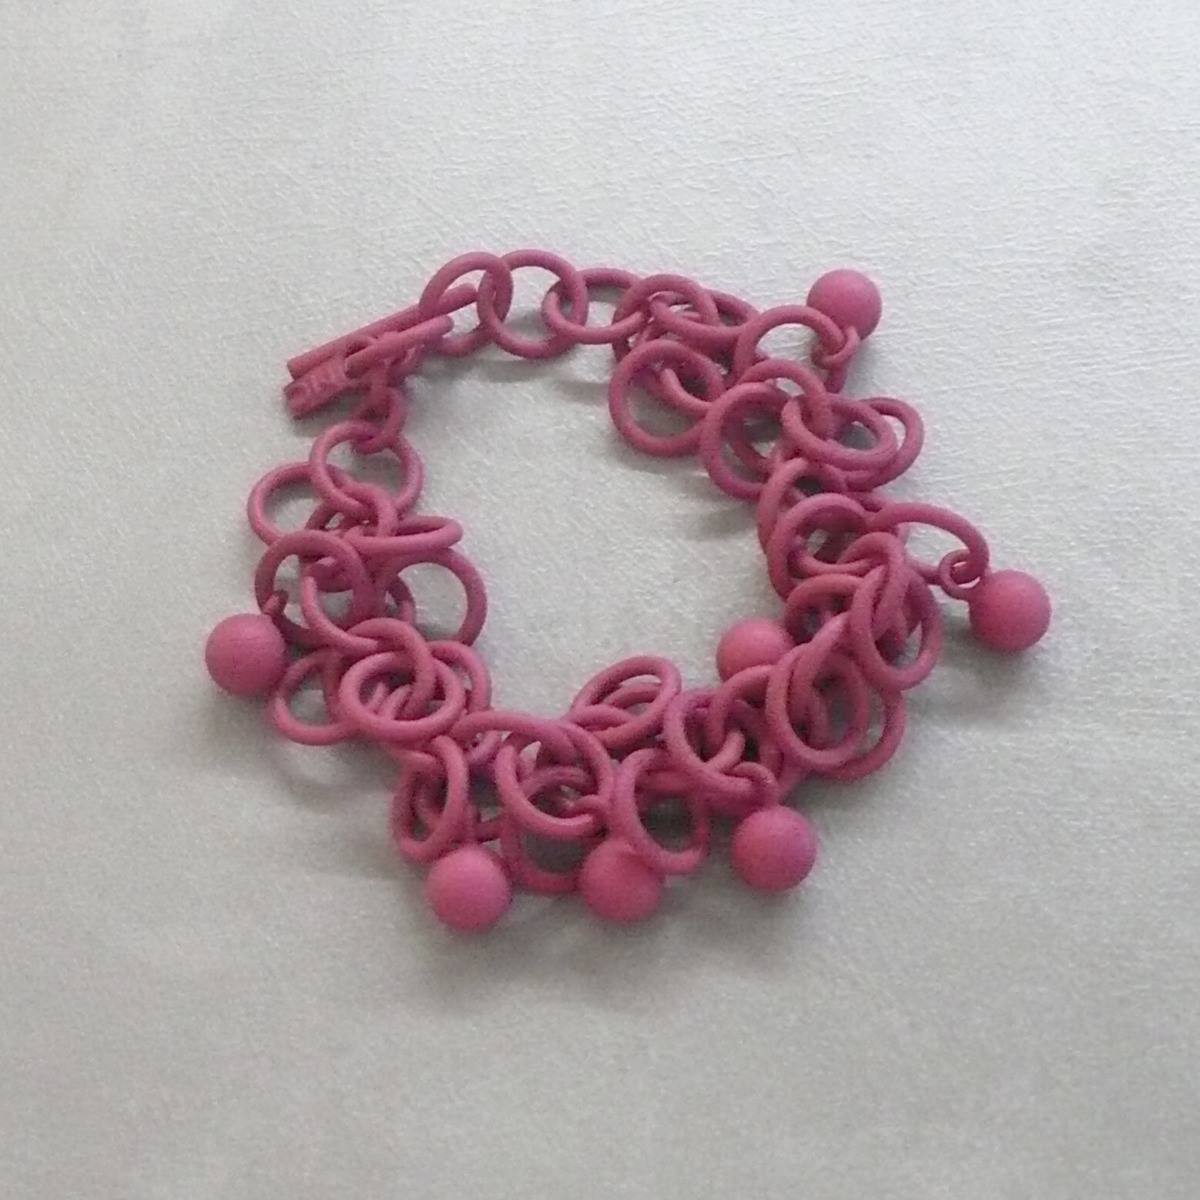 MONICA CASTIGLIONI 3D-B-SFERETTE-01 / Magenta pink